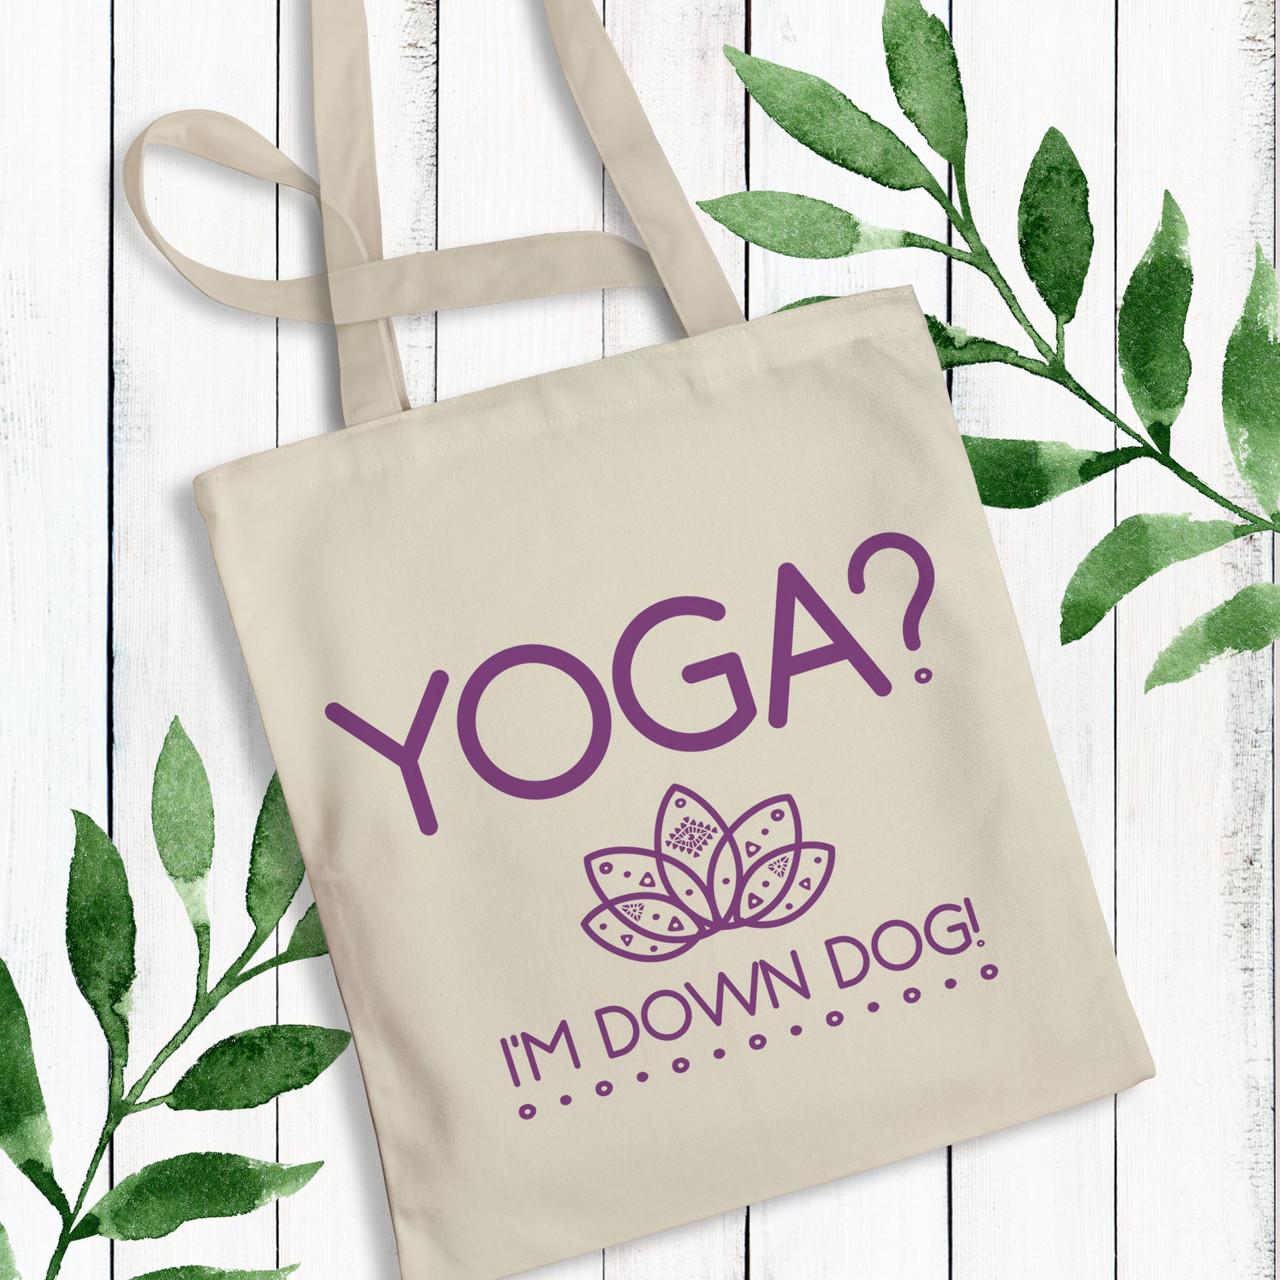 Down Dog Yoga Tote Bag